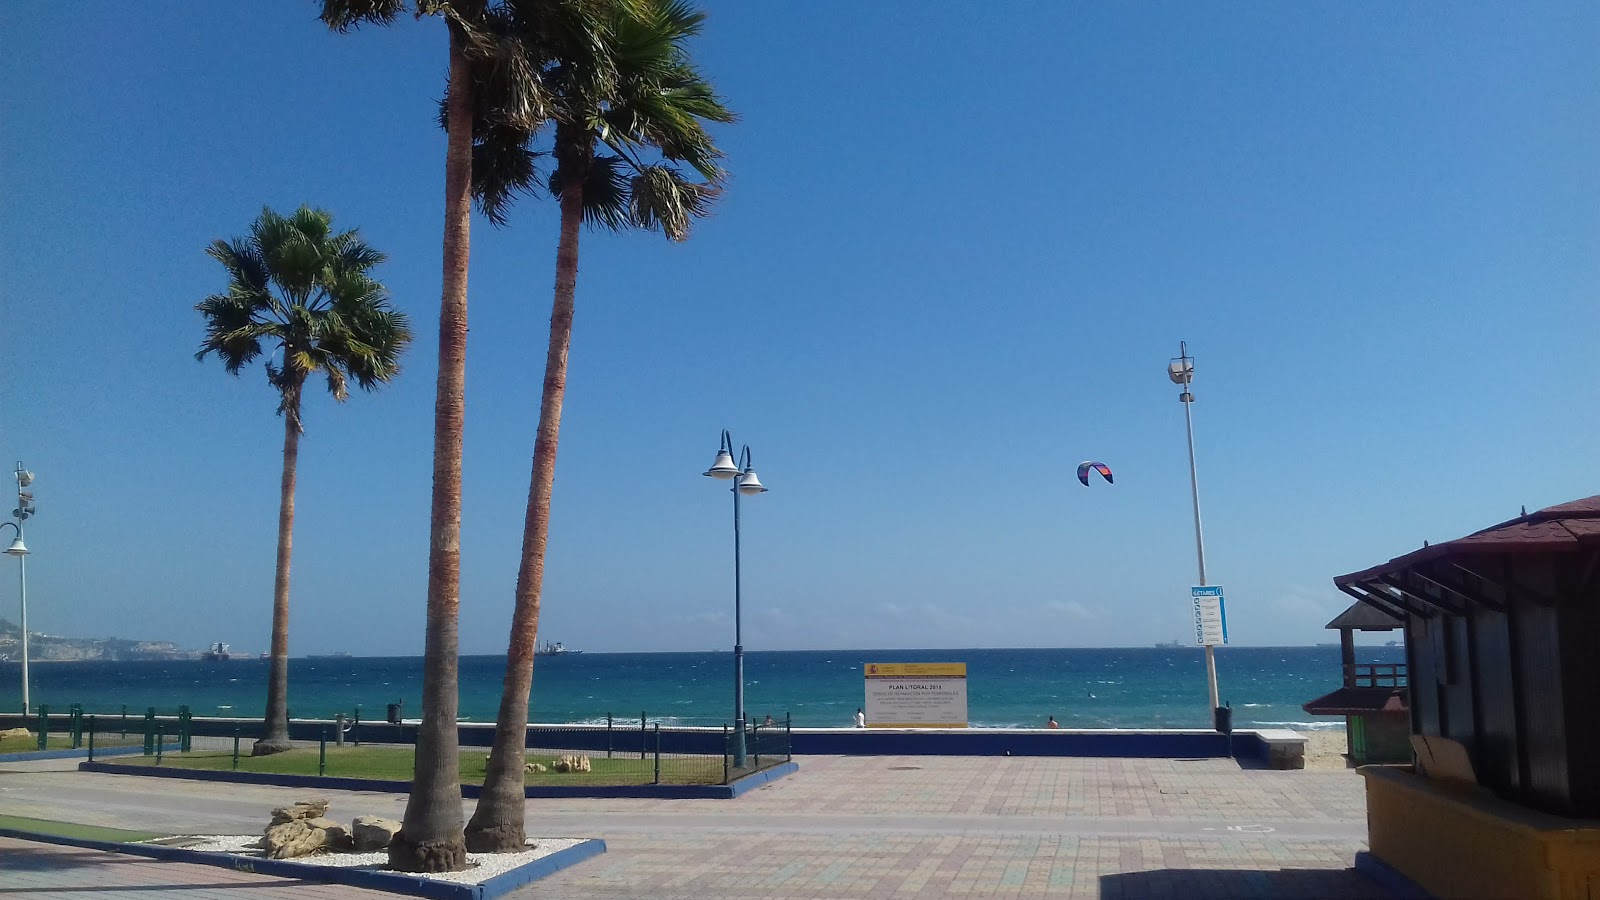 Playa de Getares的照片 - 受到放松专家欢迎的热门地点